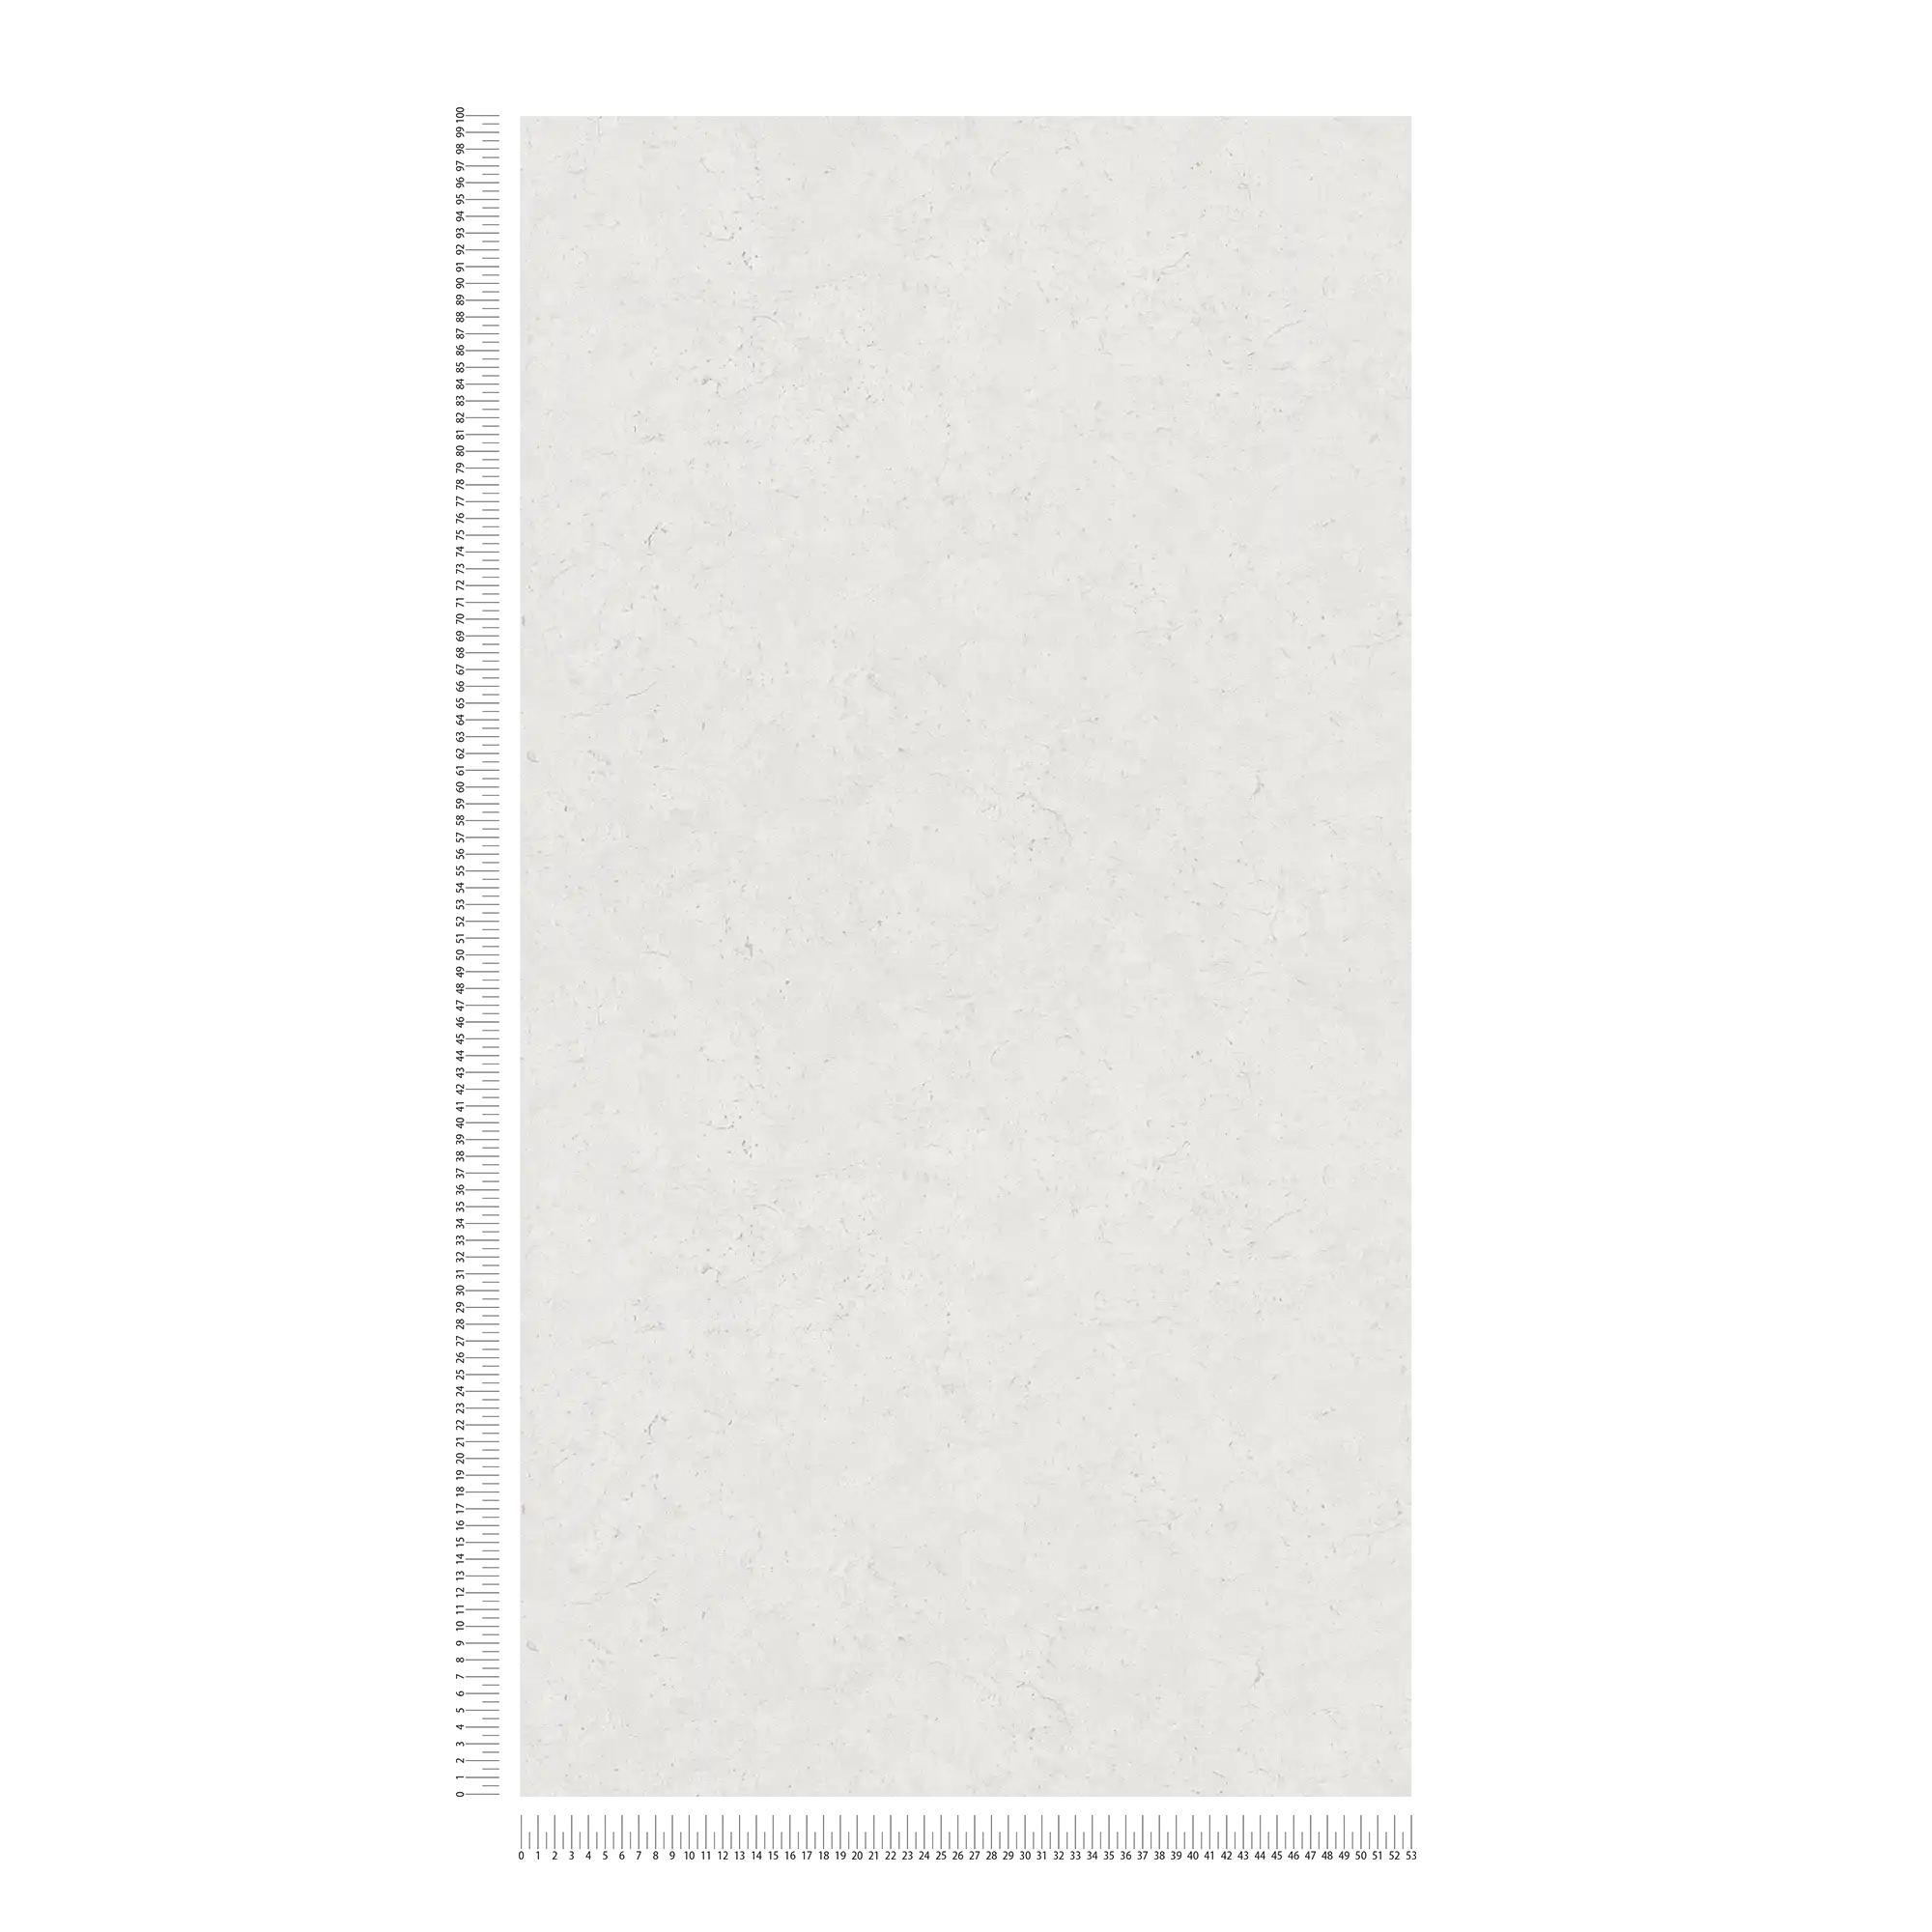             Papel pintado no tejido liso con aspecto de hormigón - gris, blanco
        